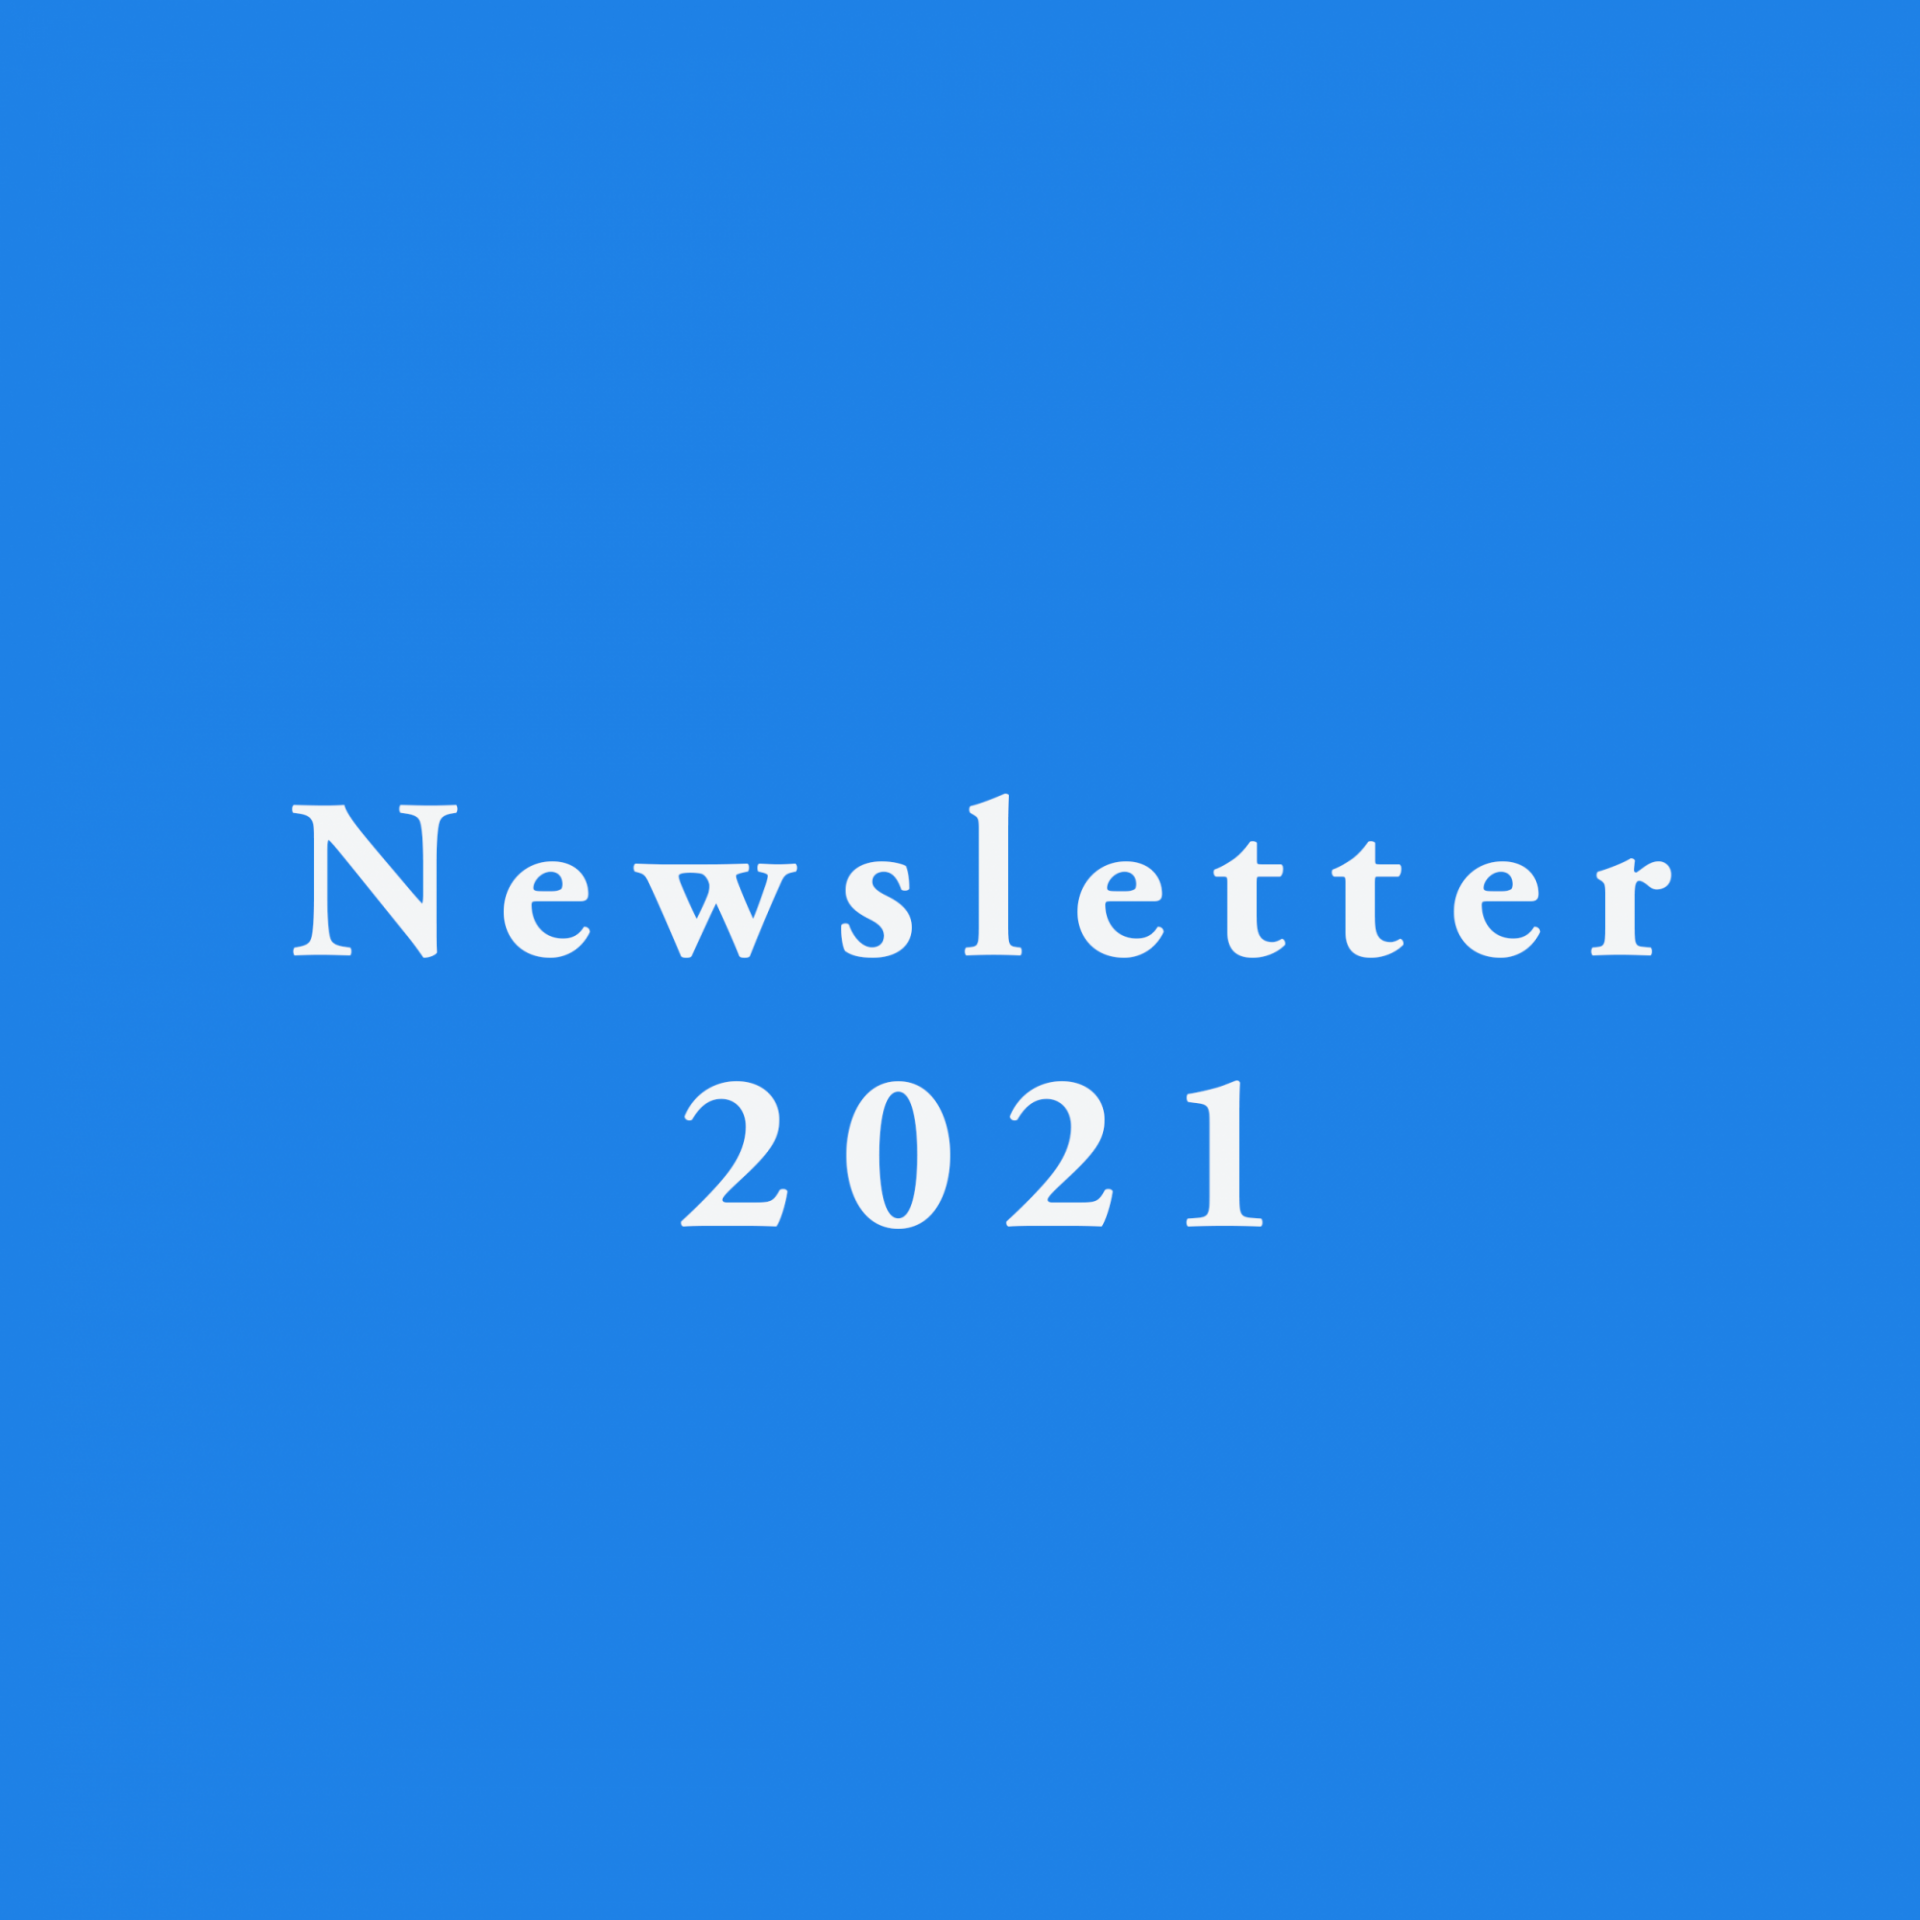 Newsletter 2021 Placeholder